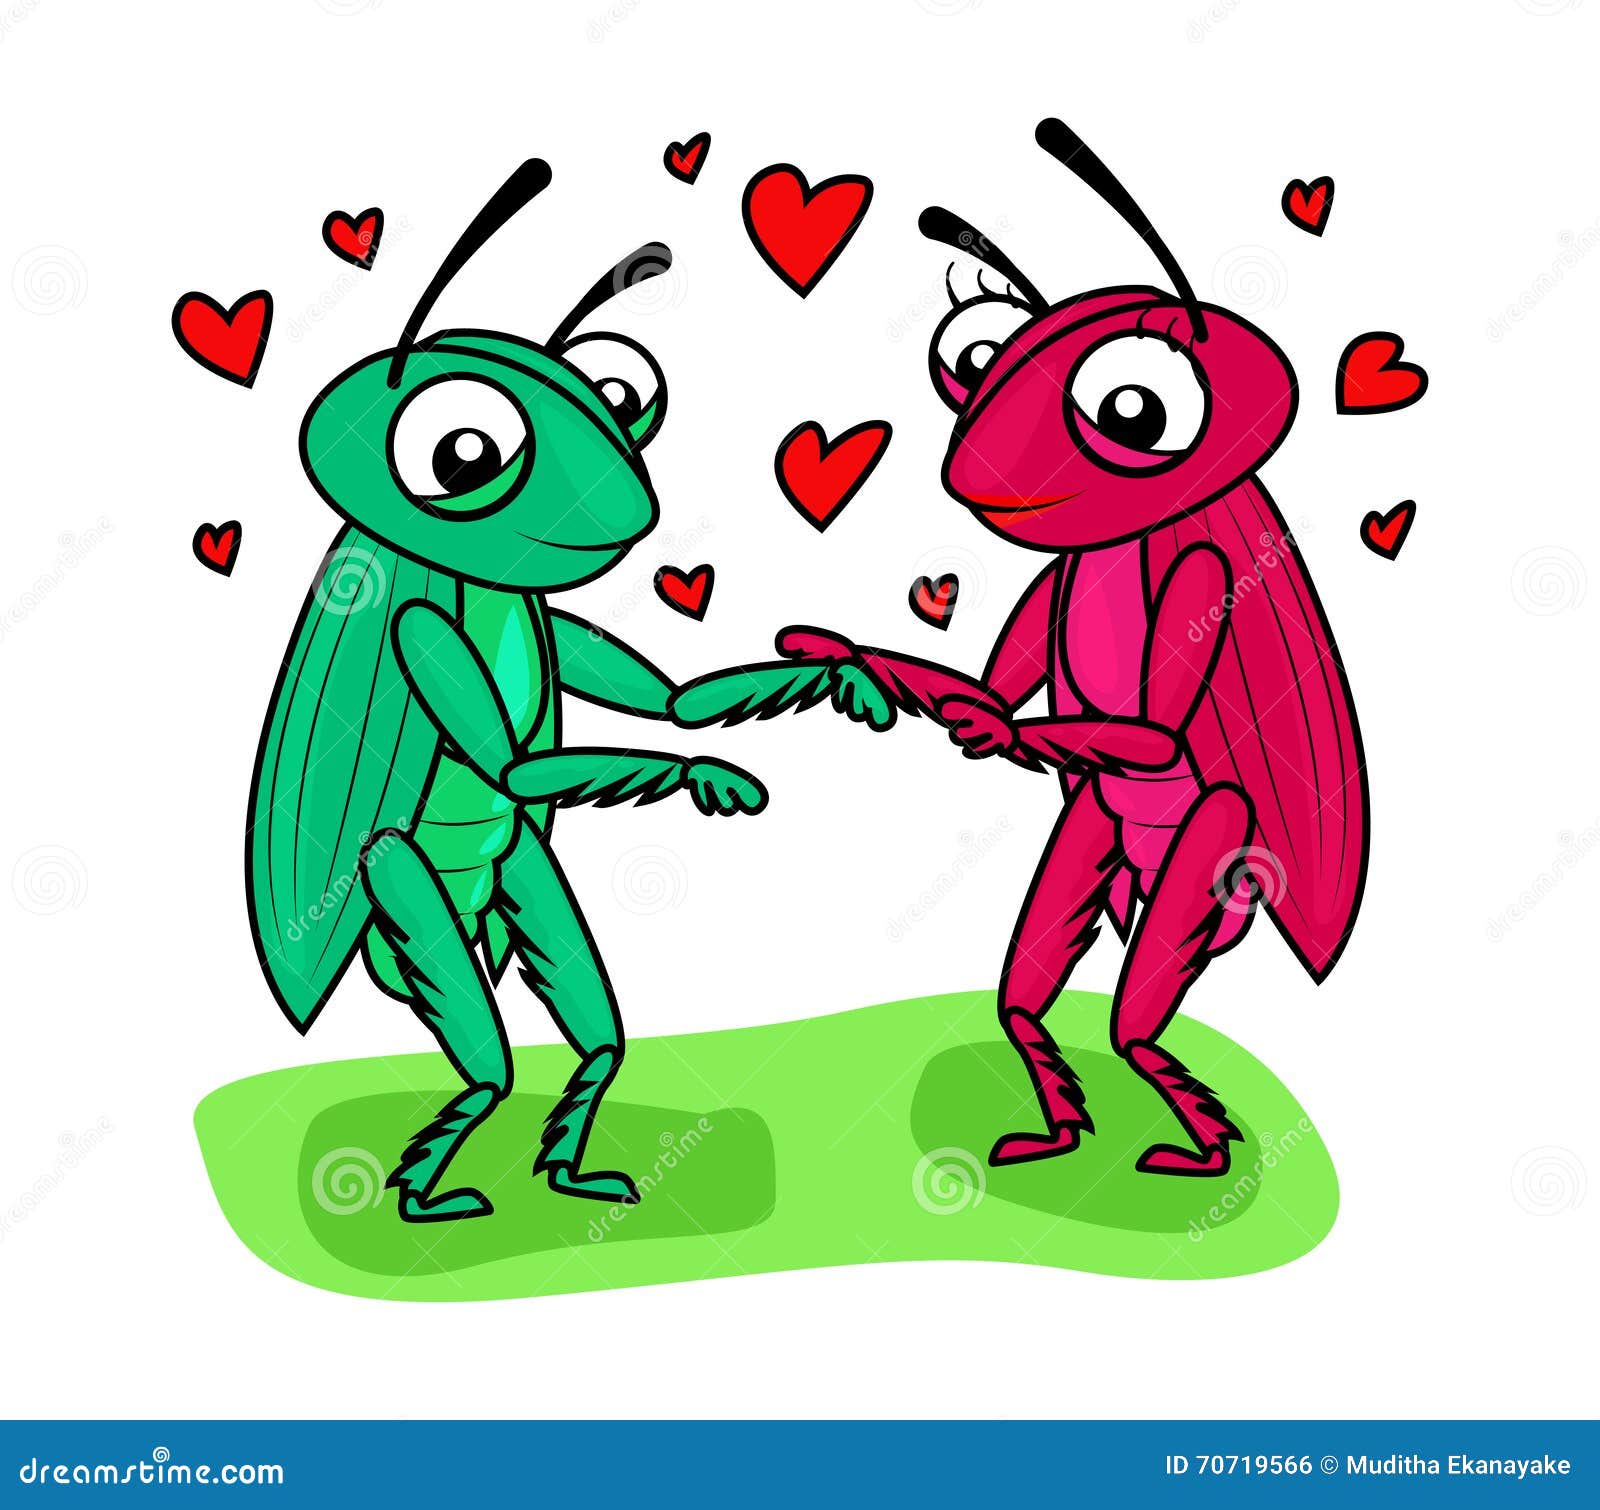 Grasshopper couple love stock vector. Illustration of ...